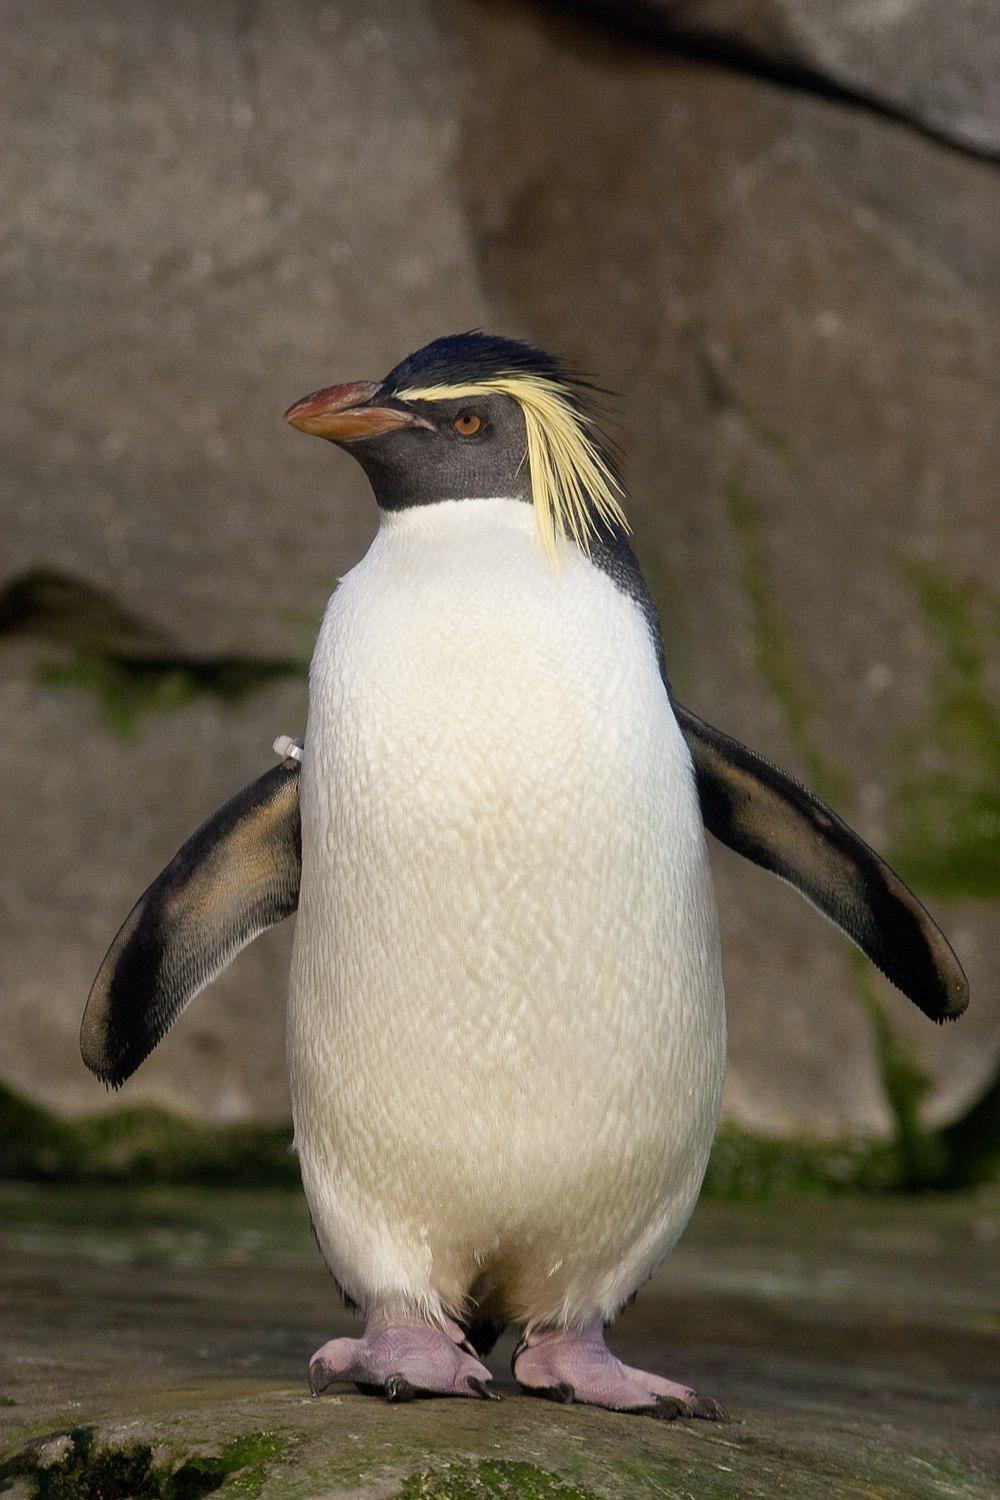 北跳岩企鹅 / Northern Rockhopper Penguin / Eudyptes moseleyi